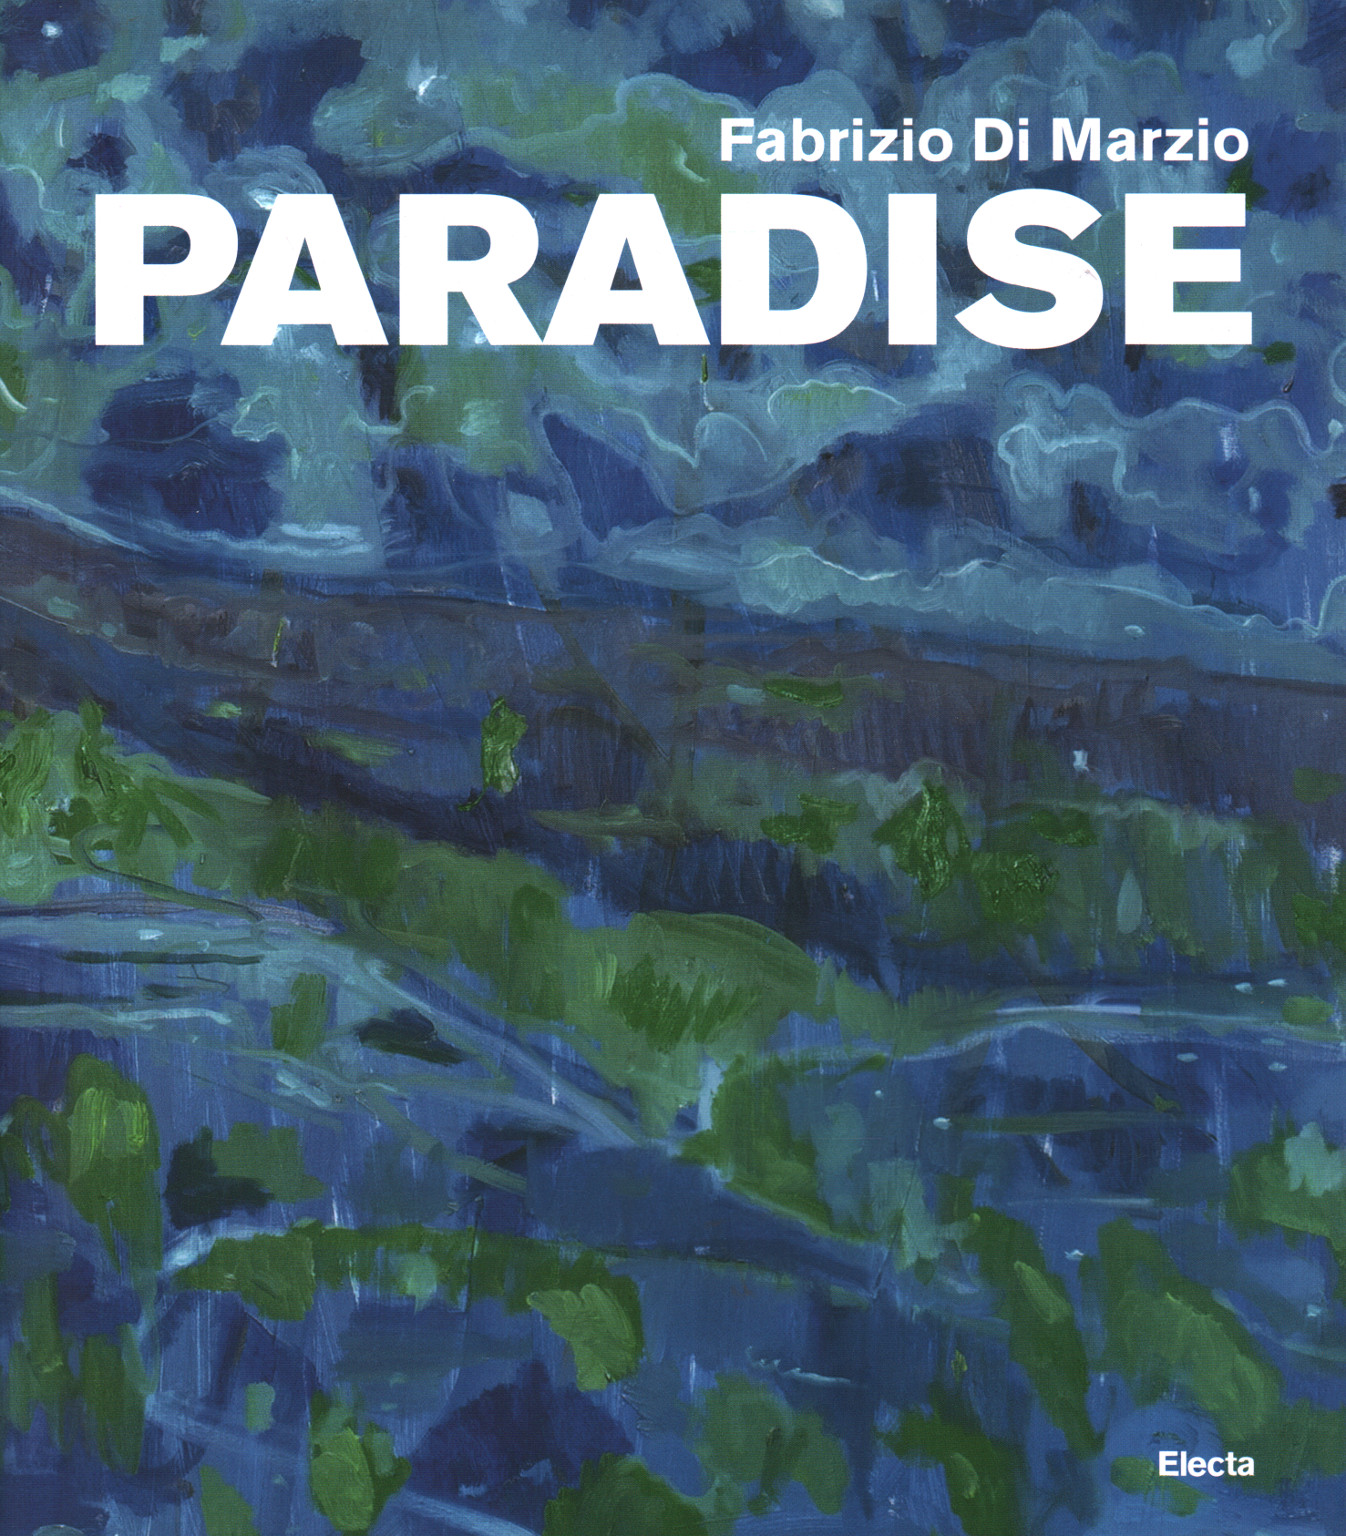 Fabrizio Di Marzio. Paradis, s.un.